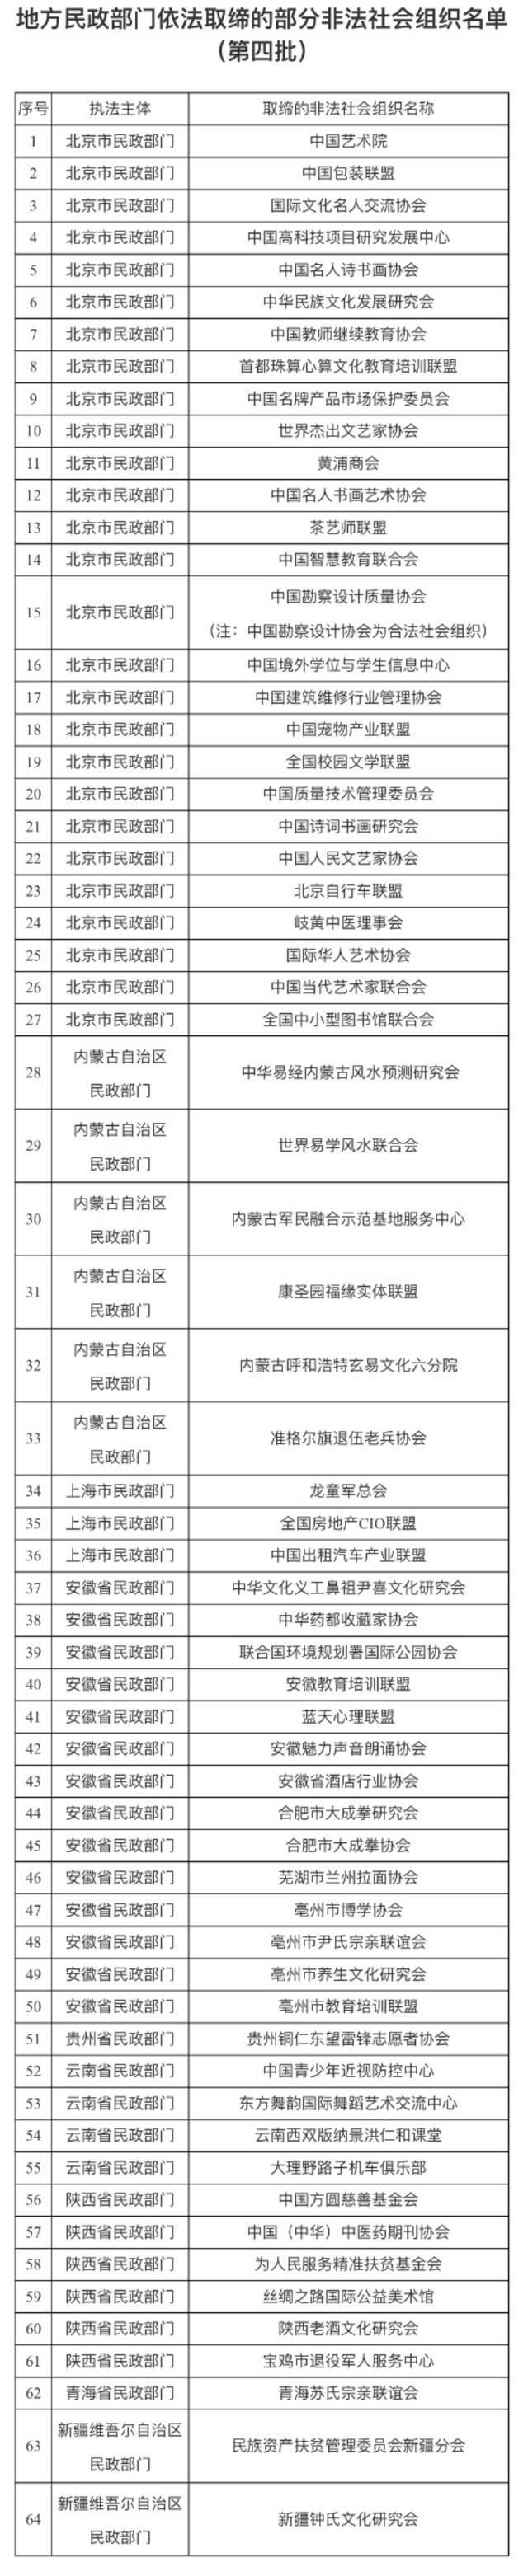 民政部公布第四批已取缔非法社会组织名单 中国艺术院等在列